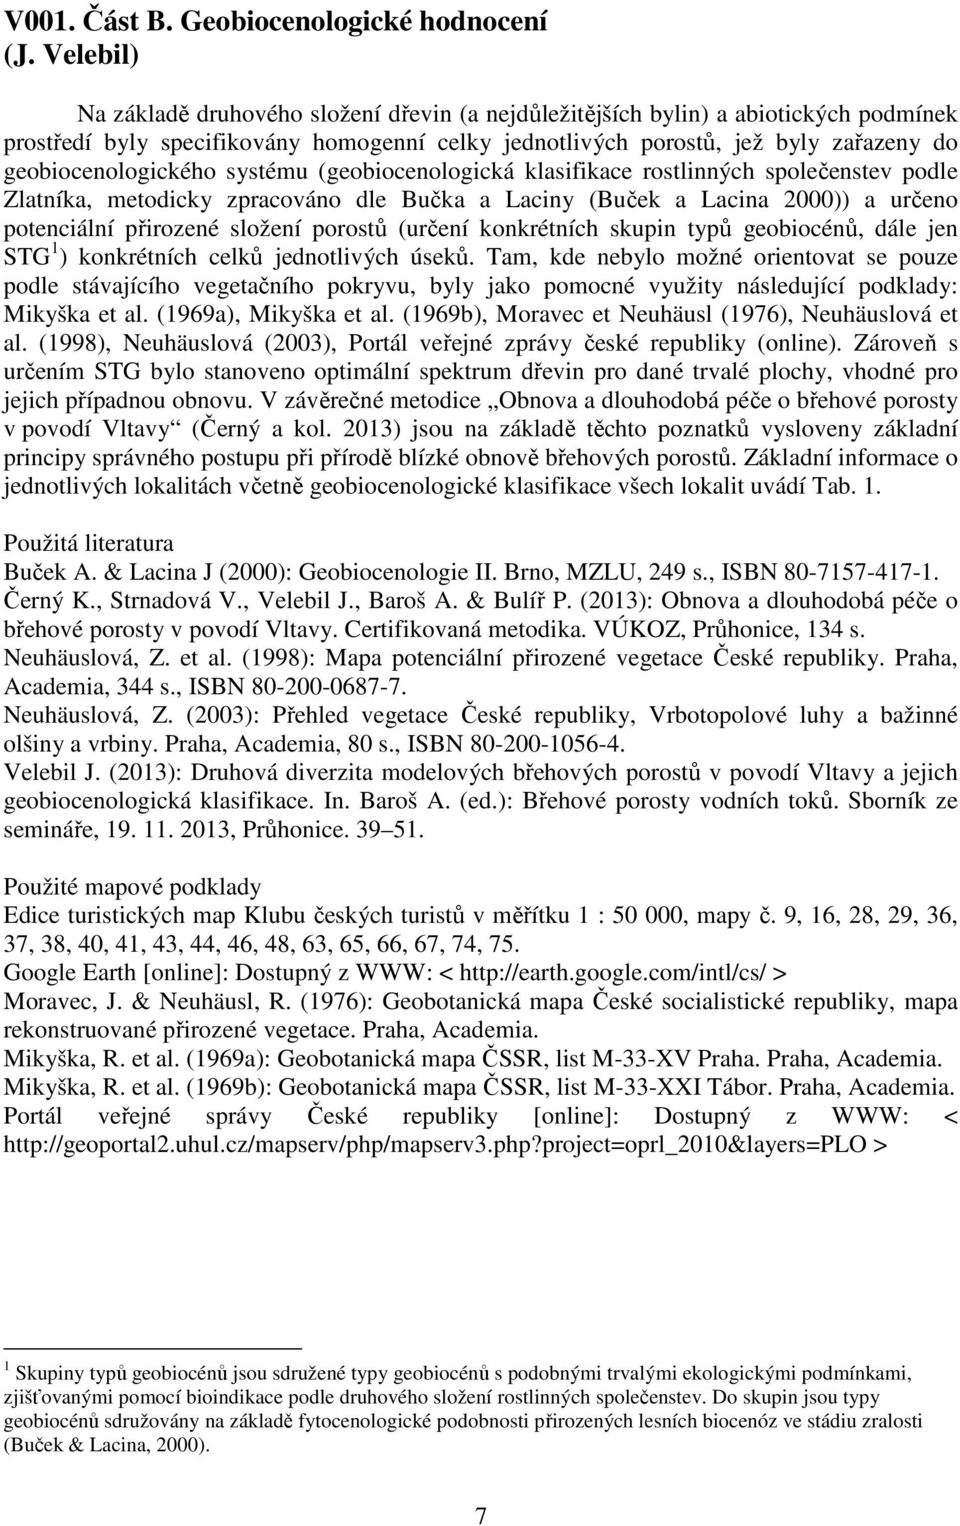 geobiocenologického systému (geobiocenologická klasifikace rostlinných společenstev podle Zlatníka, metodicky zpracováno dle Bučka a Laciny (Buček a Lacina 2000)) a určeno potenciální přirozené